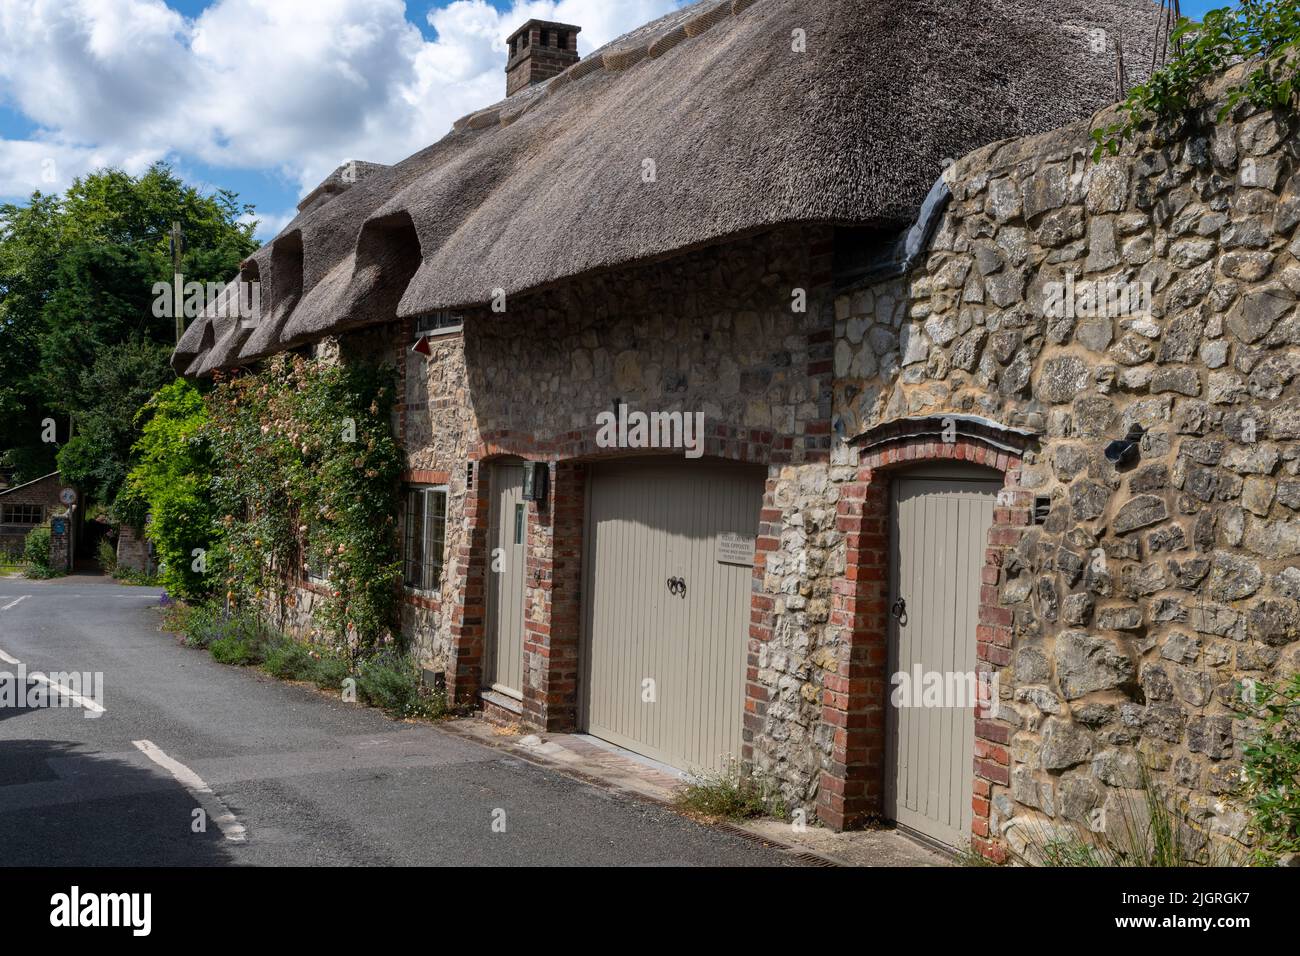 El pueblo de Amberley, West Sussex - 'El pueblo más bonito de Sussex' Foto de stock